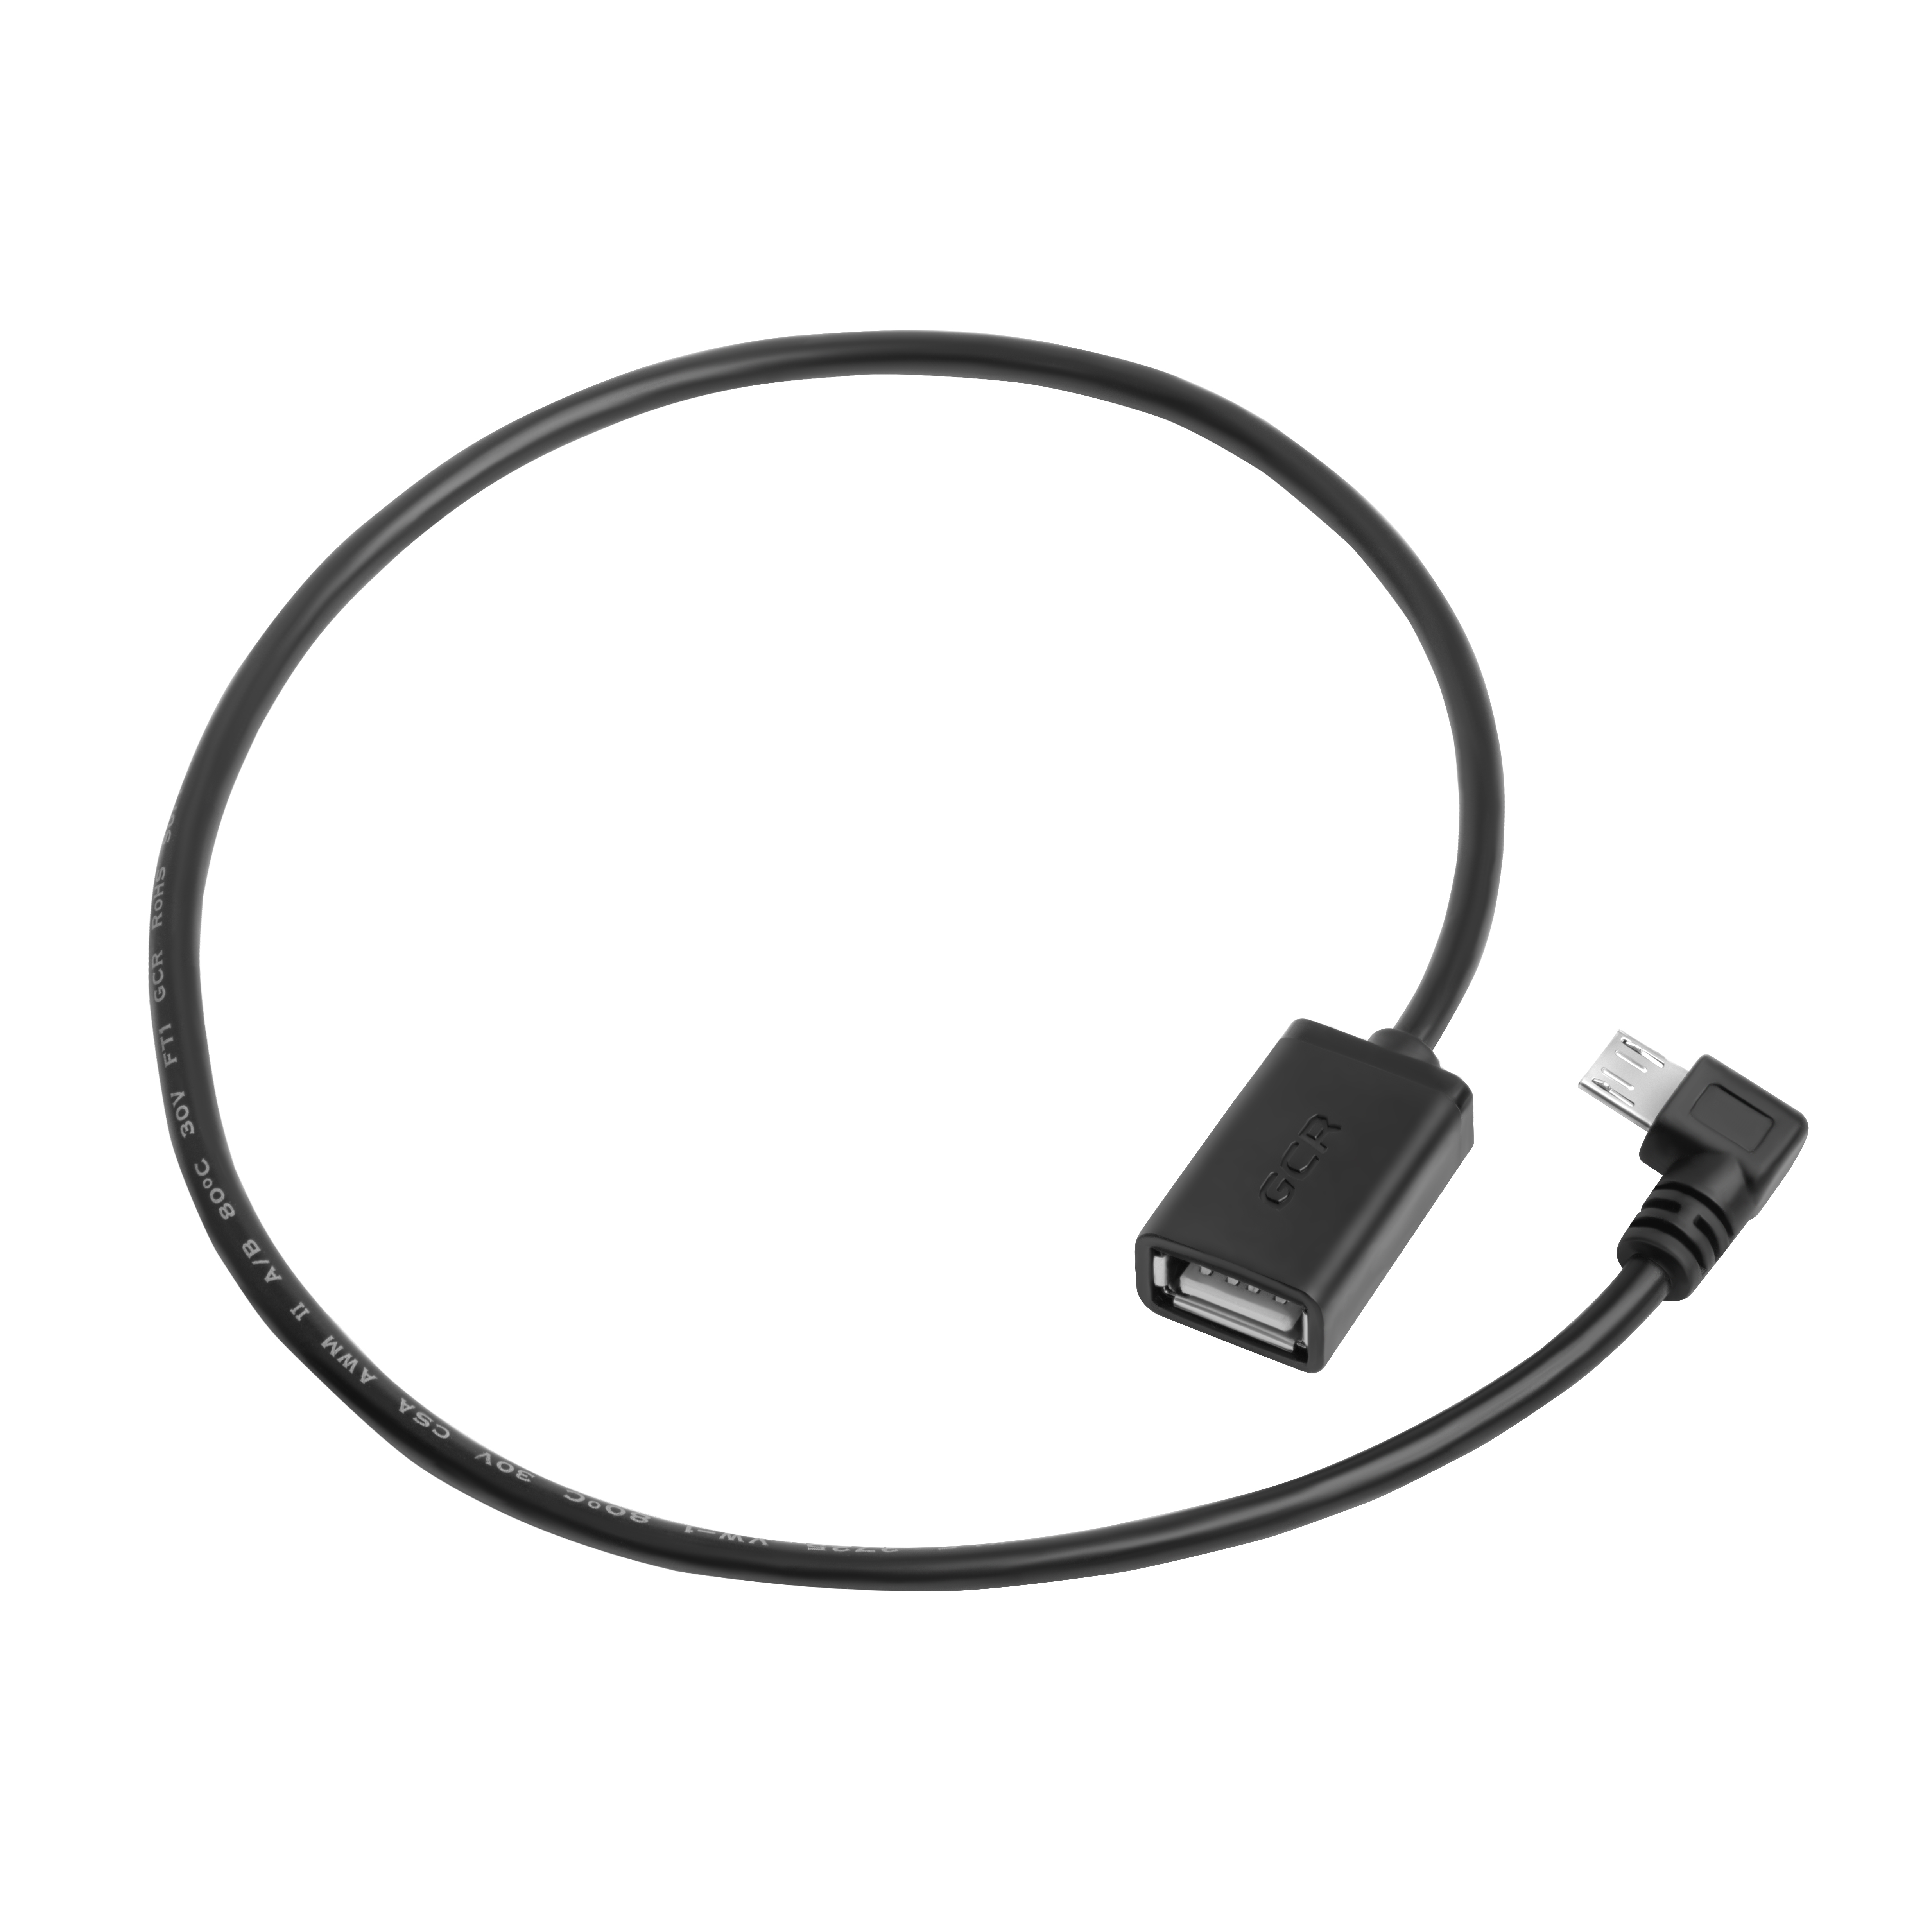 GCR Угловой адаптер переходник для подключения к планшету USB устройств, 0.75 м, черный, угловой коннектор, двойное экранирование, морозостойкий